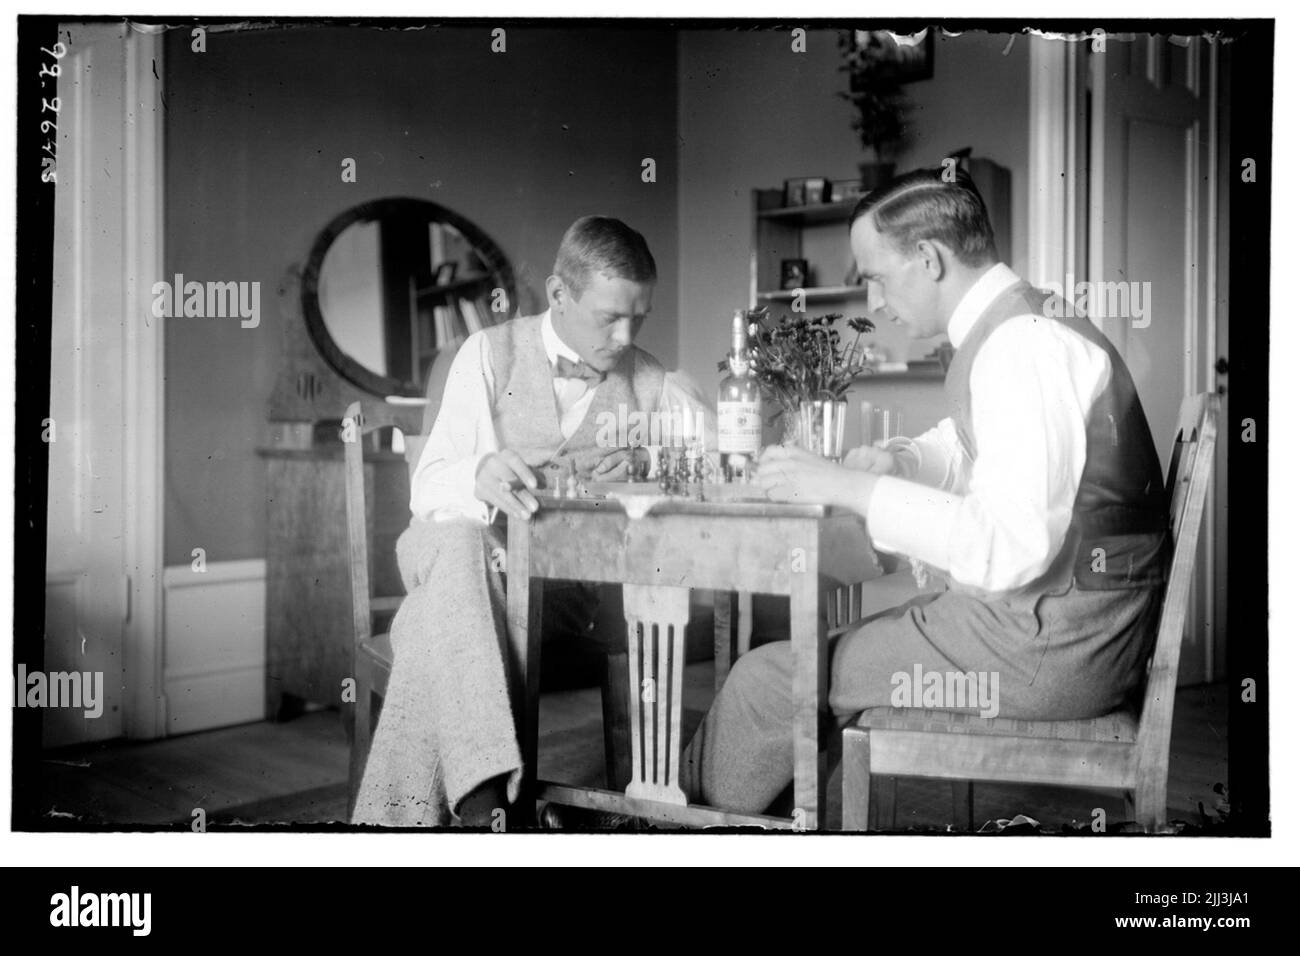 Sanatorium de Hålahult, intérieur, deux hommes jouent aux échecs Banque D'Images